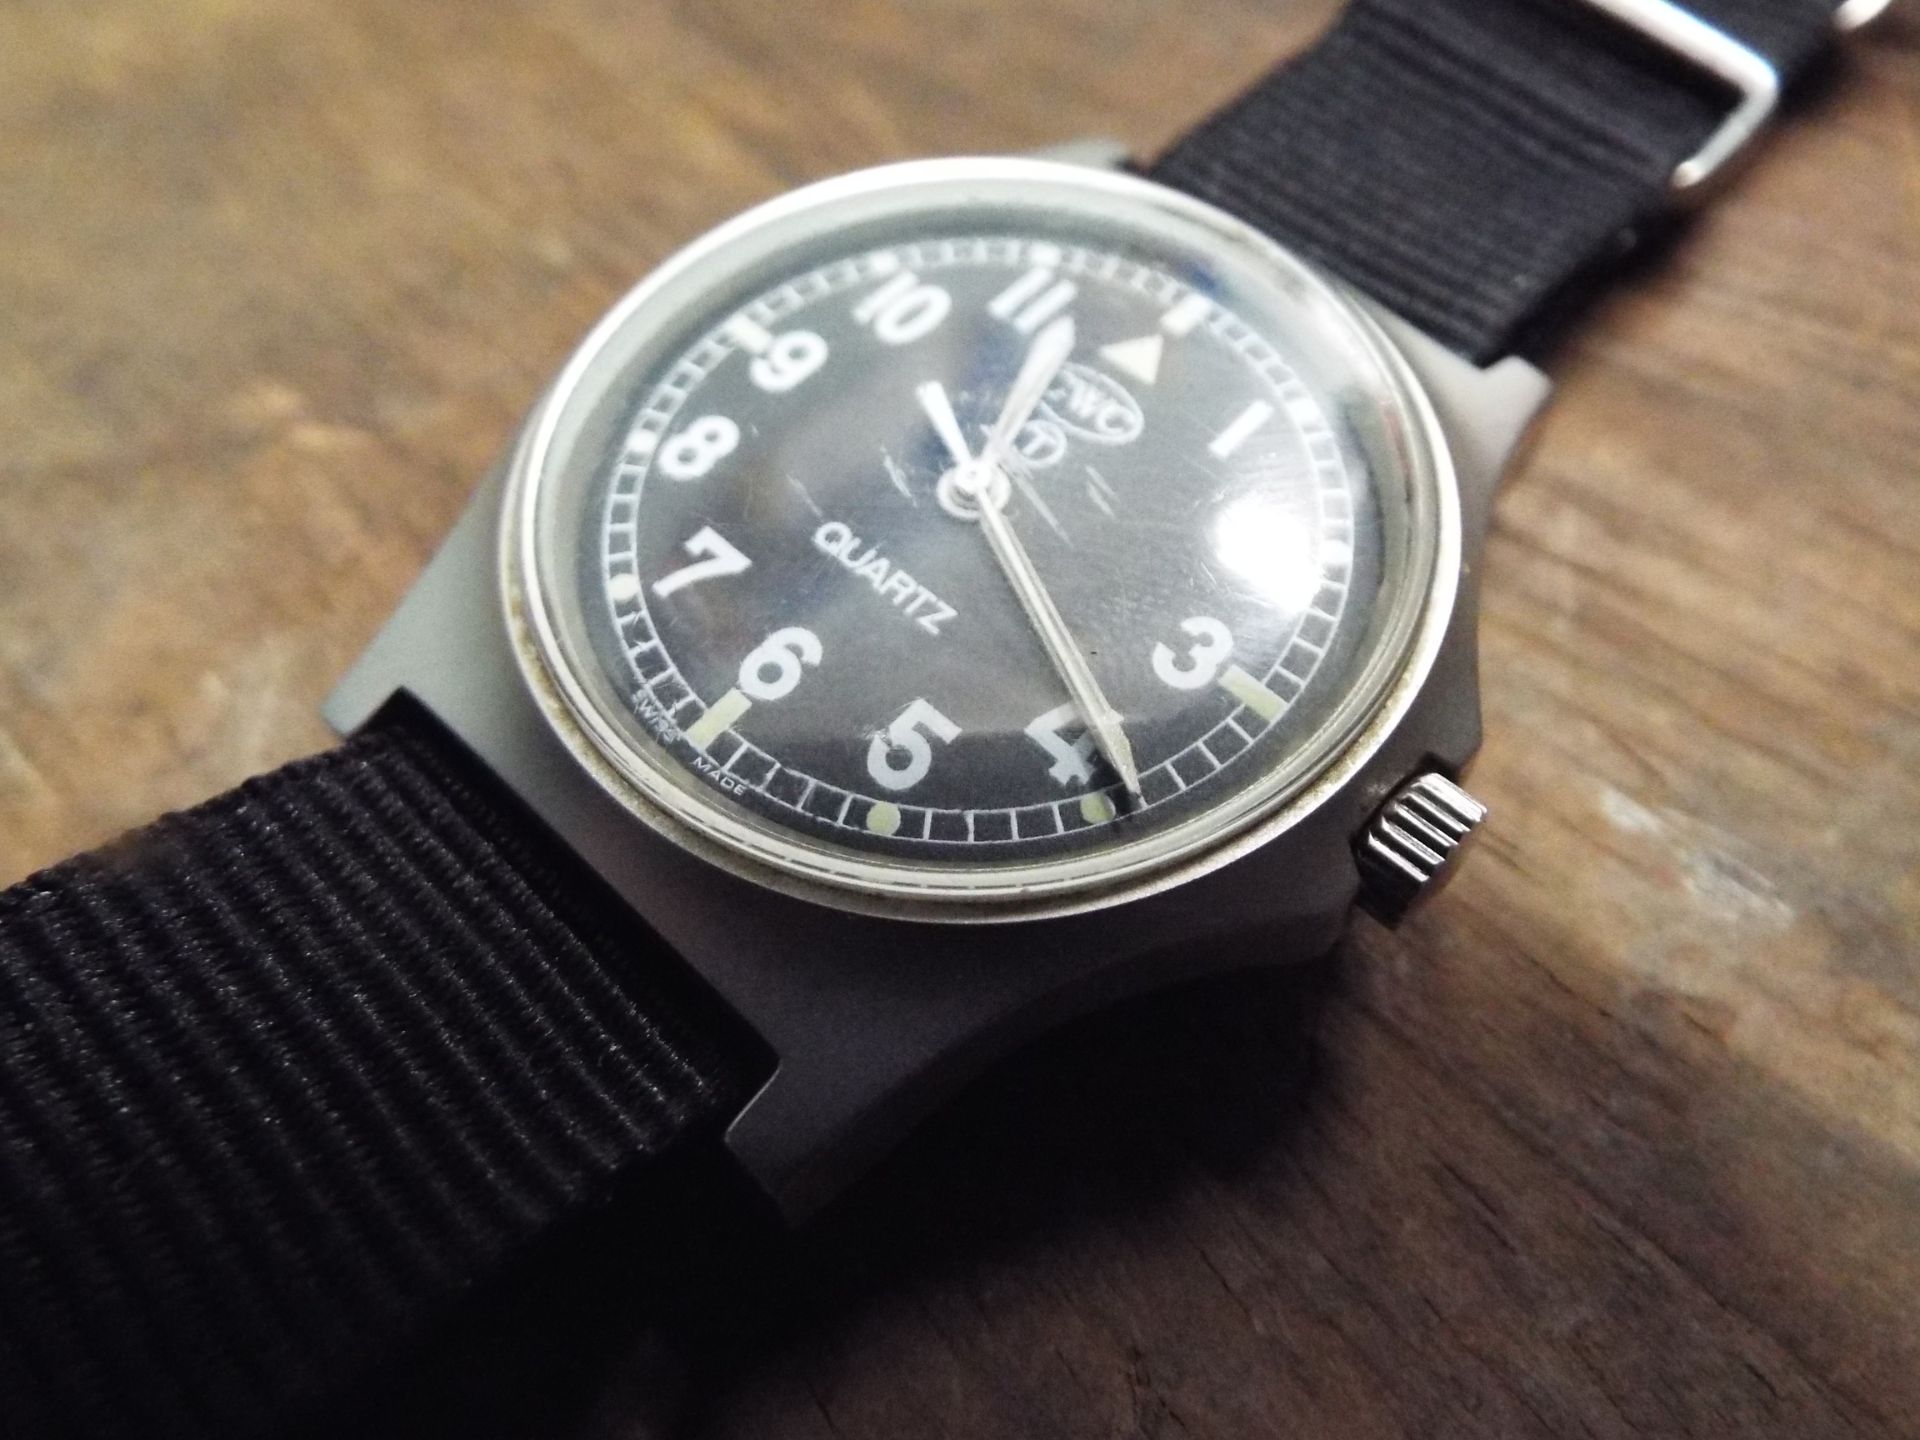 Very Rare Genuine British Army, Waterproof CWC Quartz Wrist Watch - Image 3 of 6